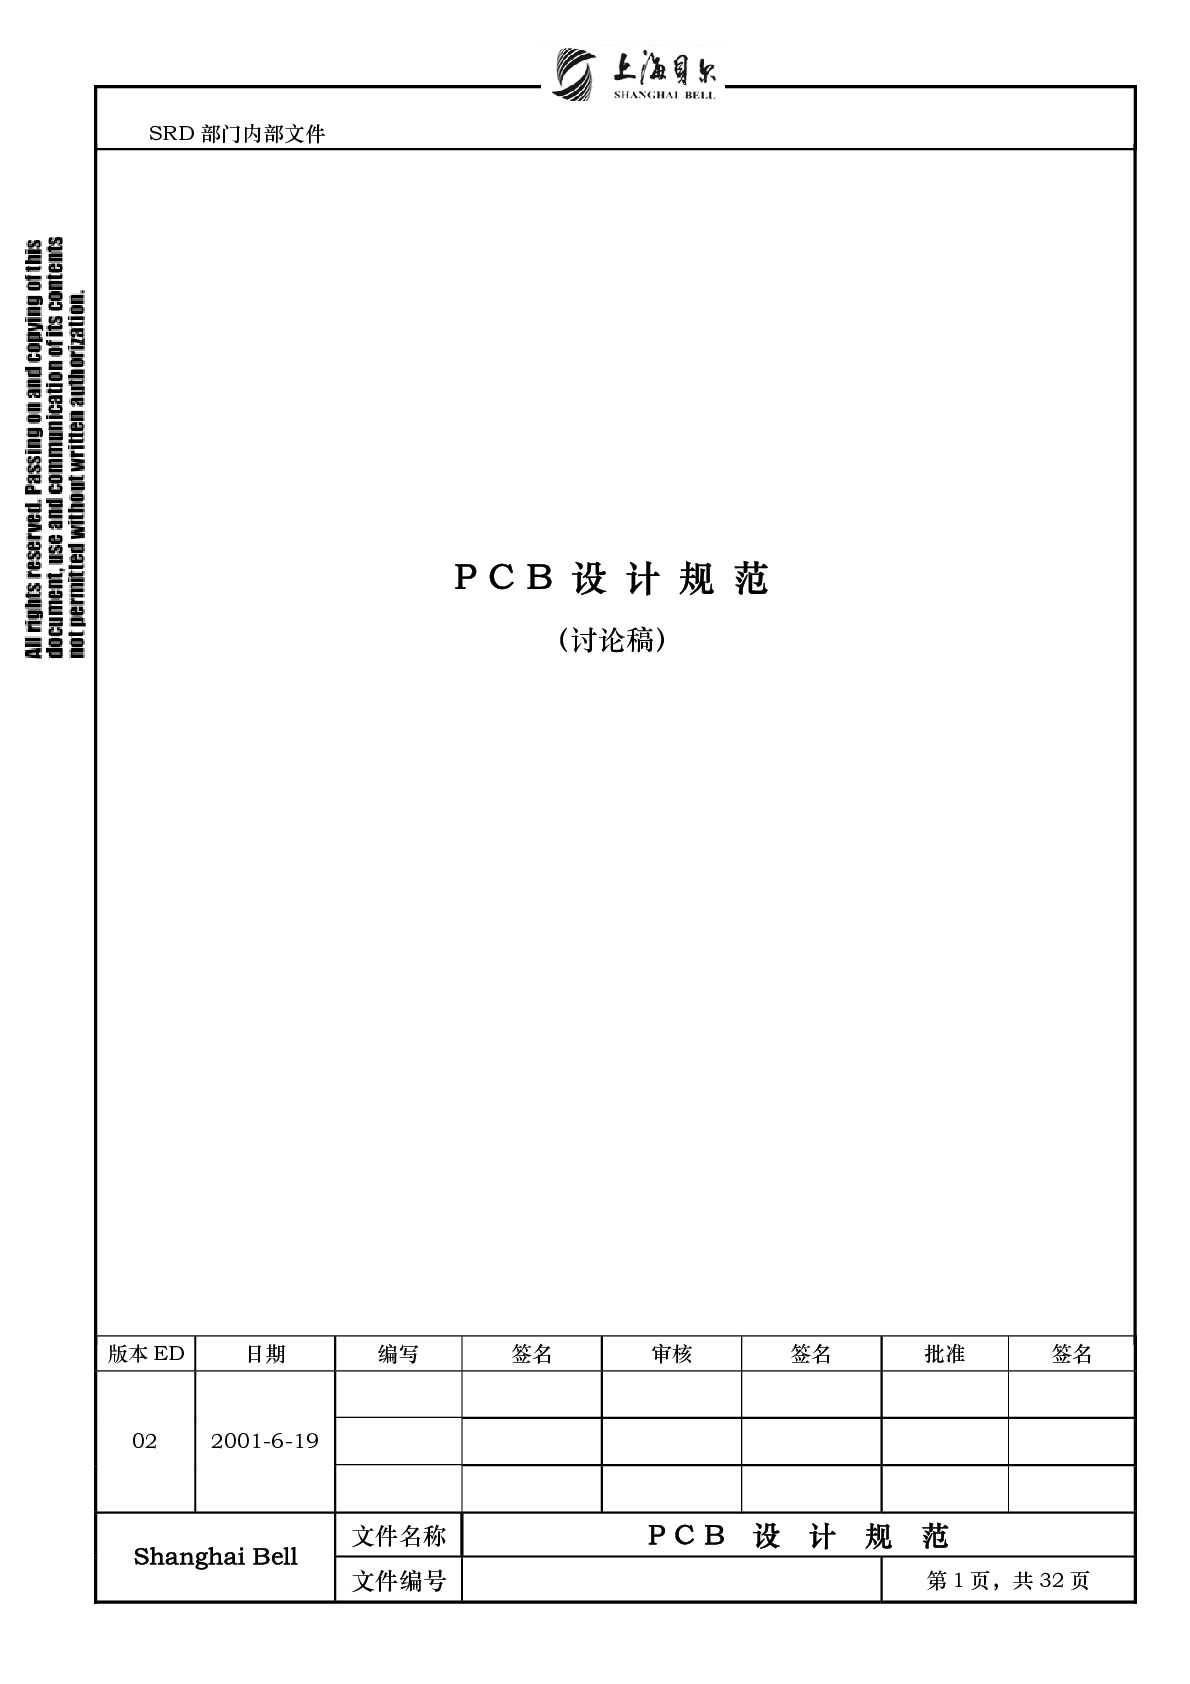 上海贝尔PCB标准